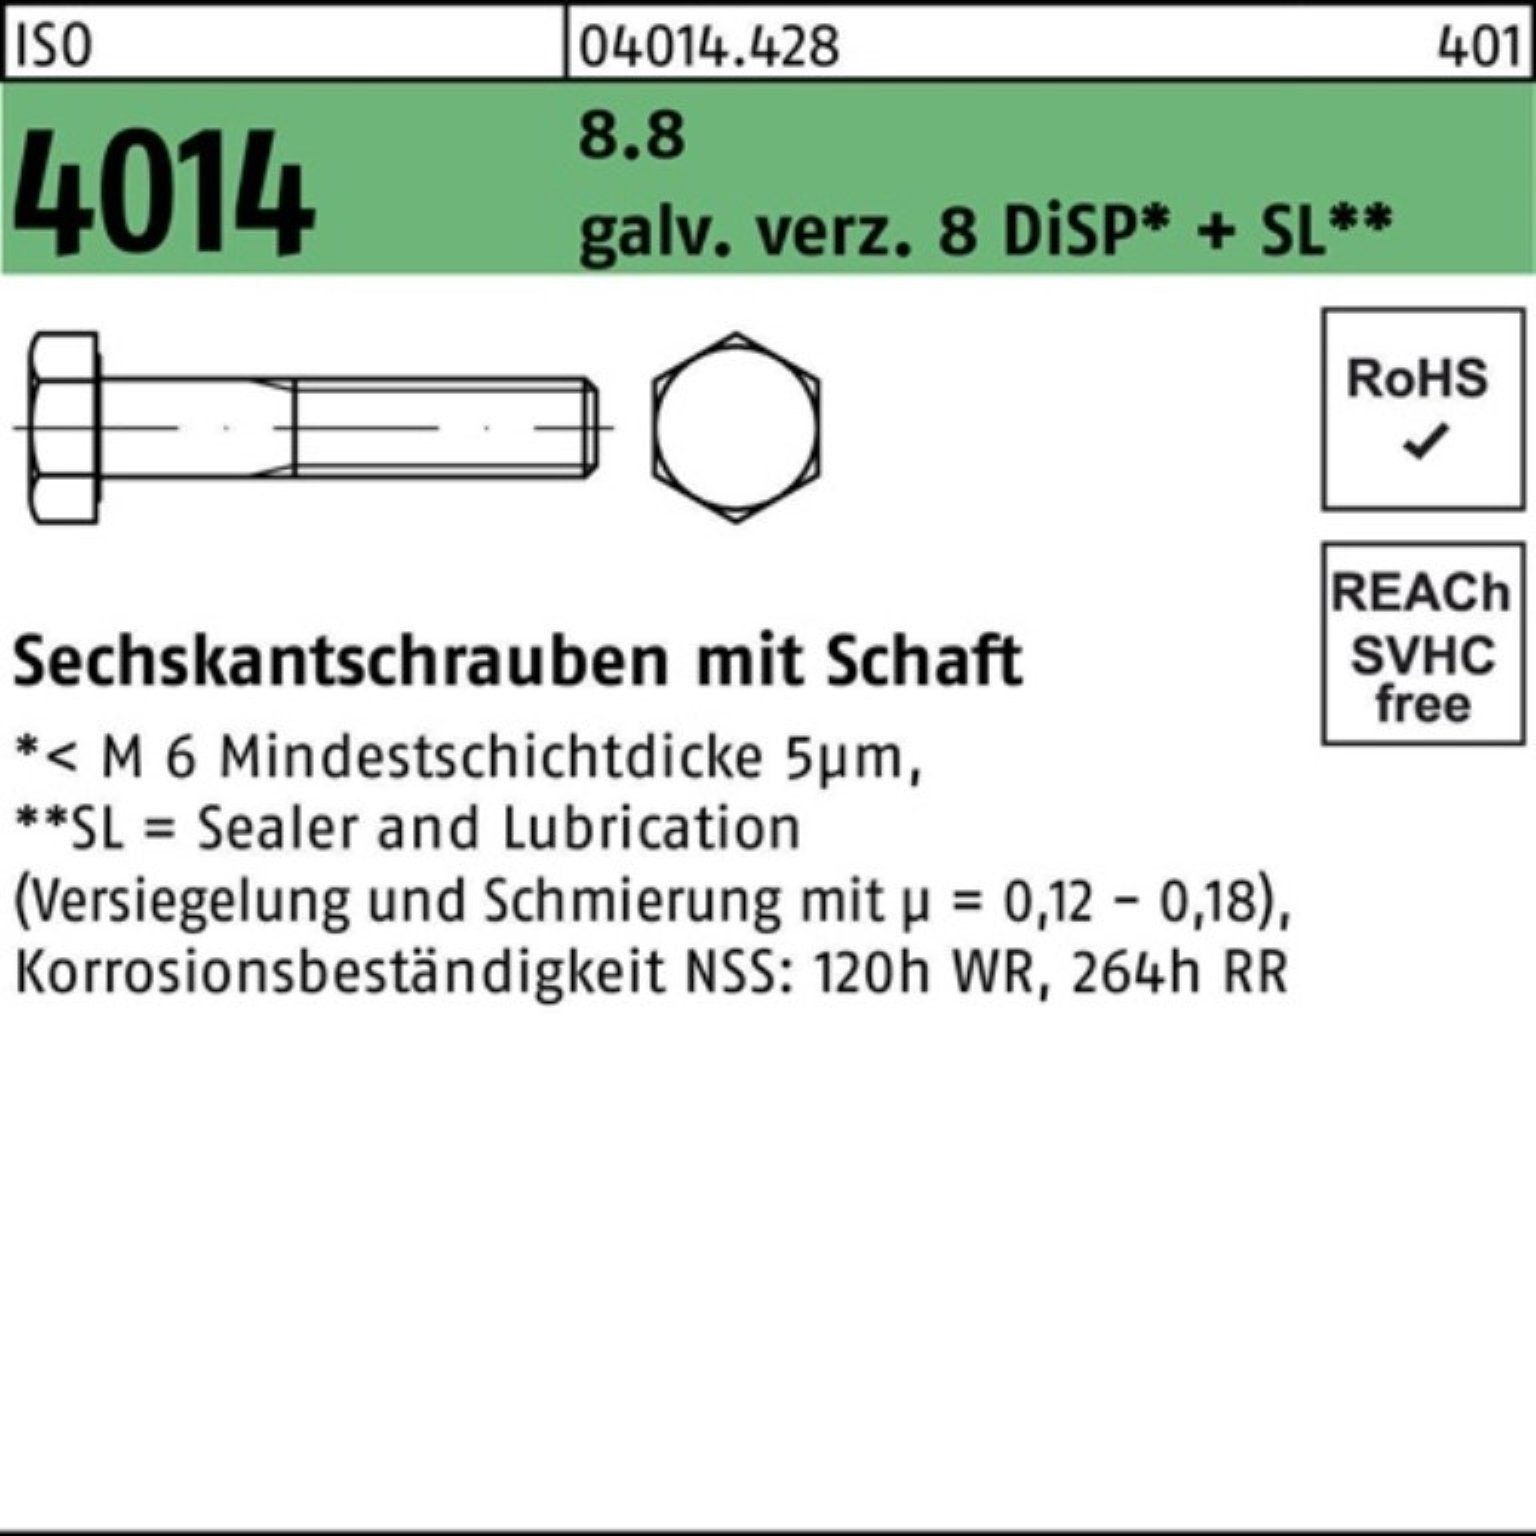 Bufab Sechskantschraube 100er M20x240 ISO Sechskantschraube 8.8 Schaft Pack 4014 8 galv.verz